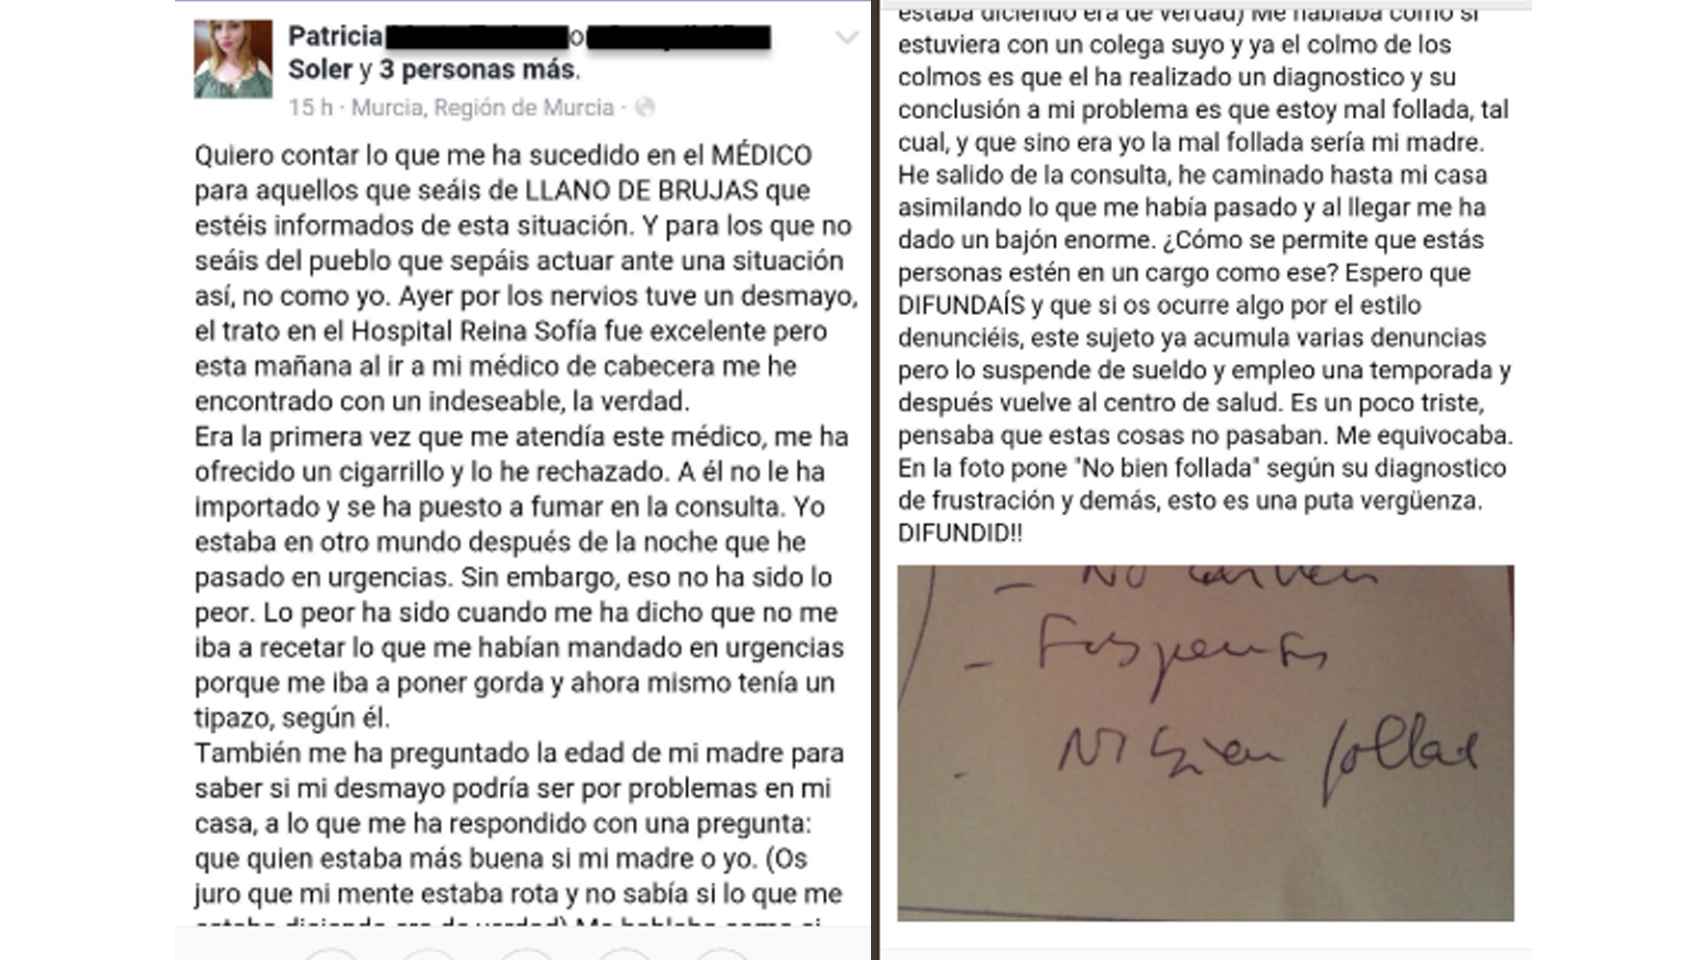 Publicación que Patricia subió a Facebook tras el incidente en la consulta del doctor Ramón en 2016.